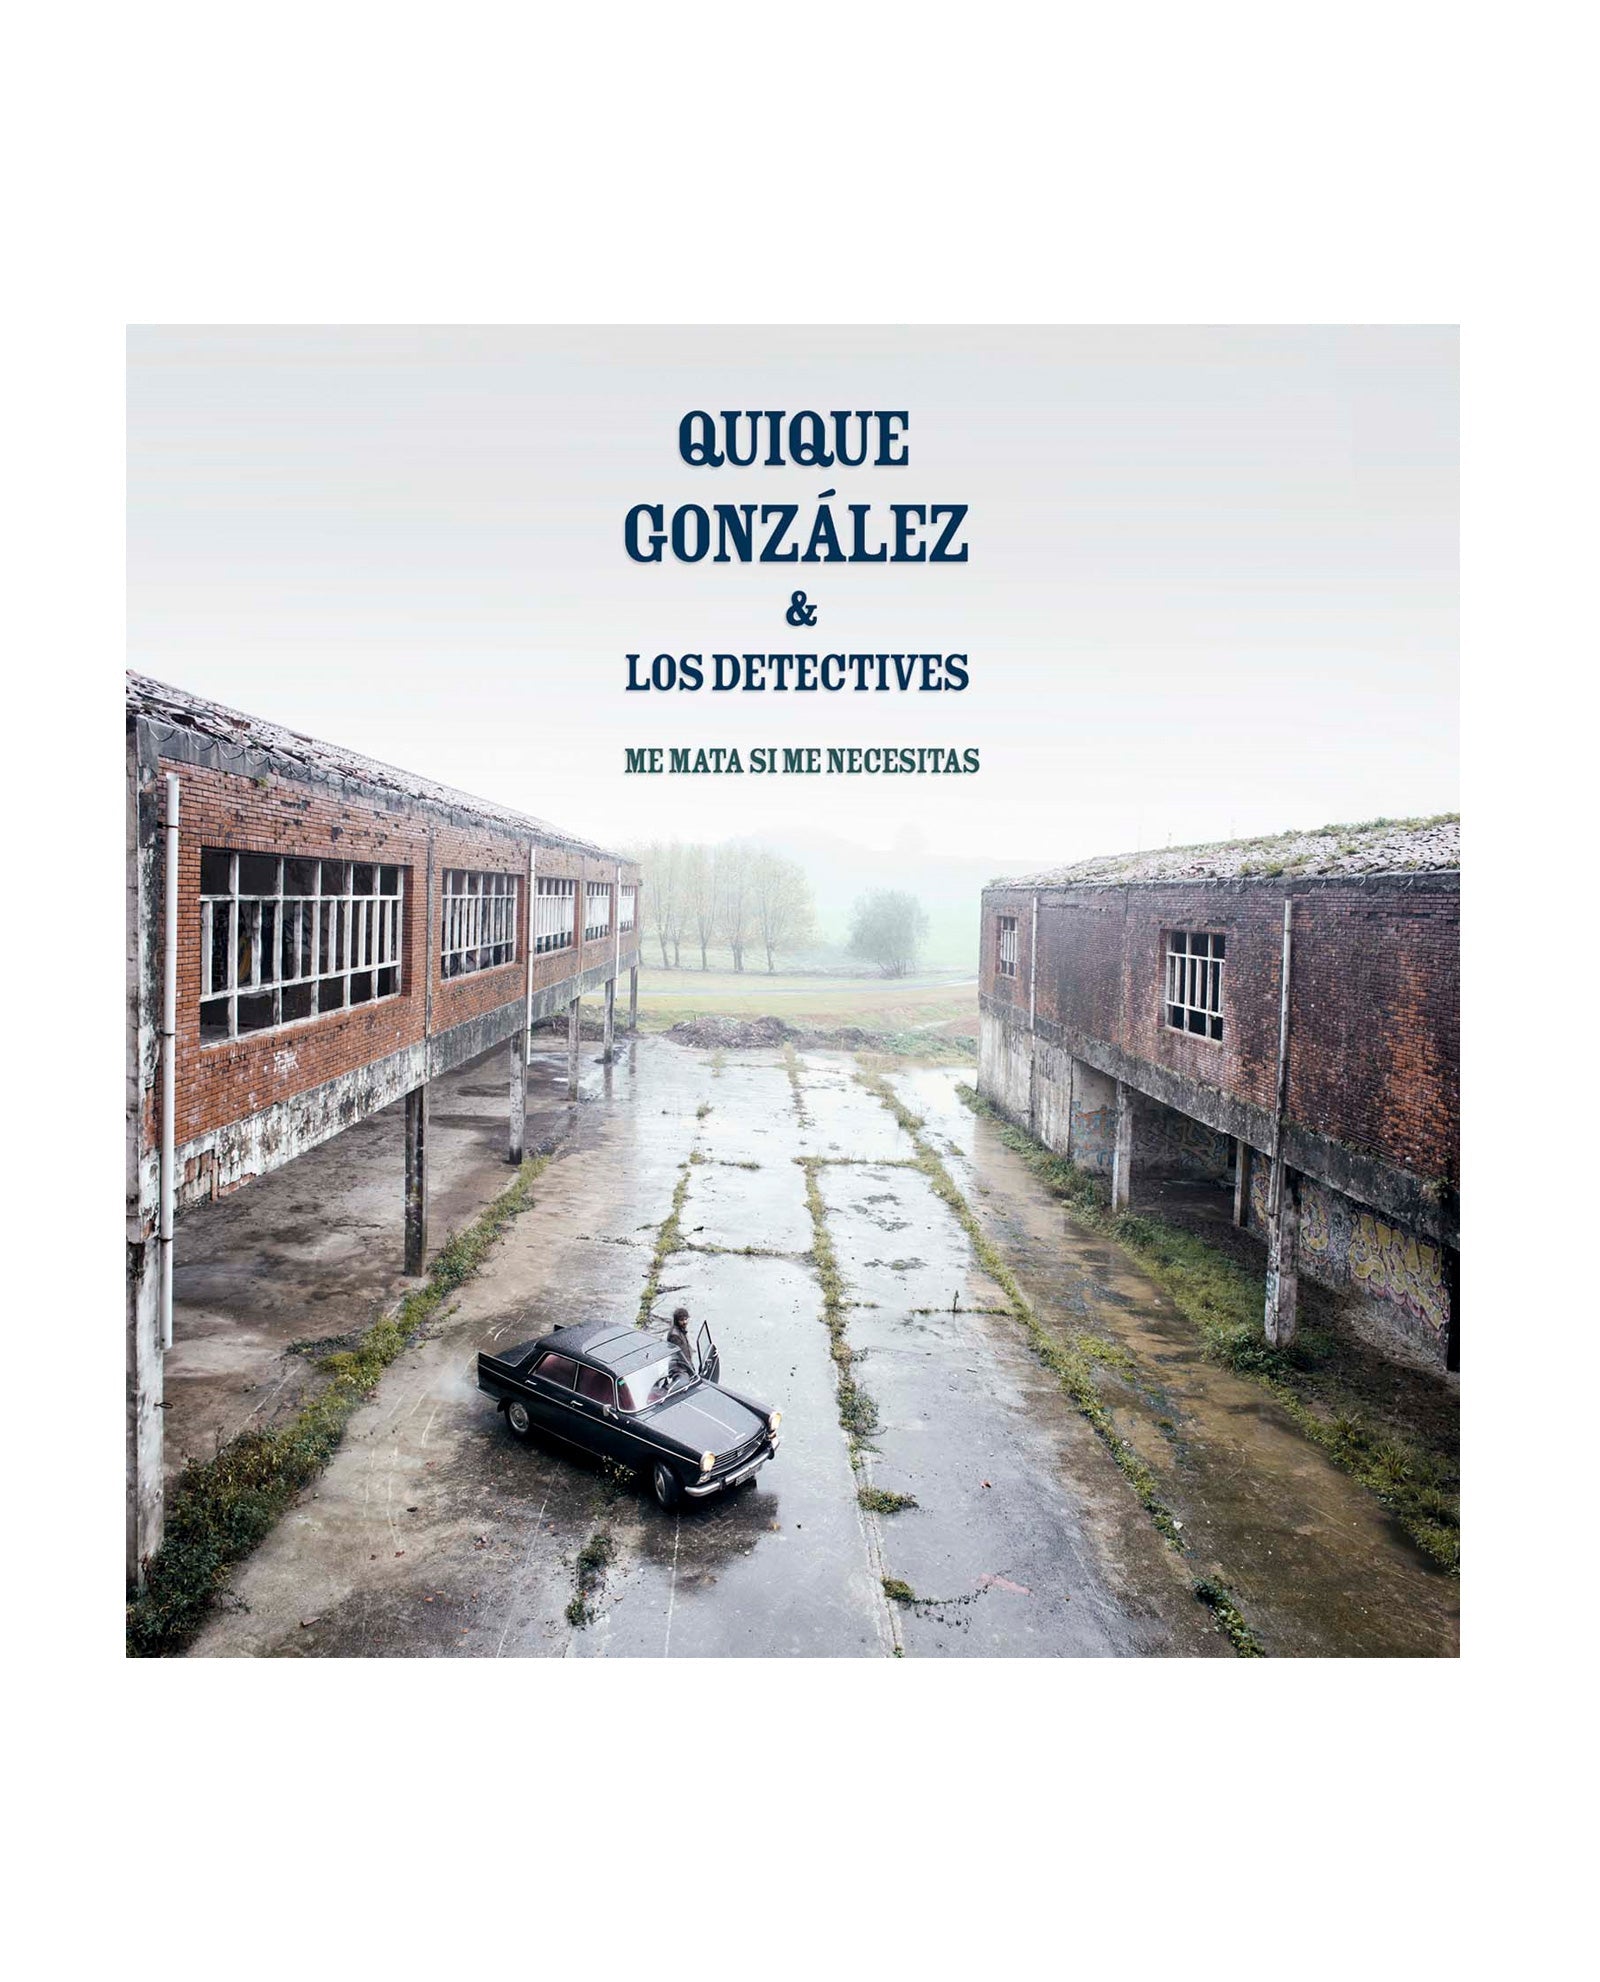 Quique Gonzalez - LP Vinilo Firmado "Me mata si me necesitas" - D2fy · Rocktud - Quique González